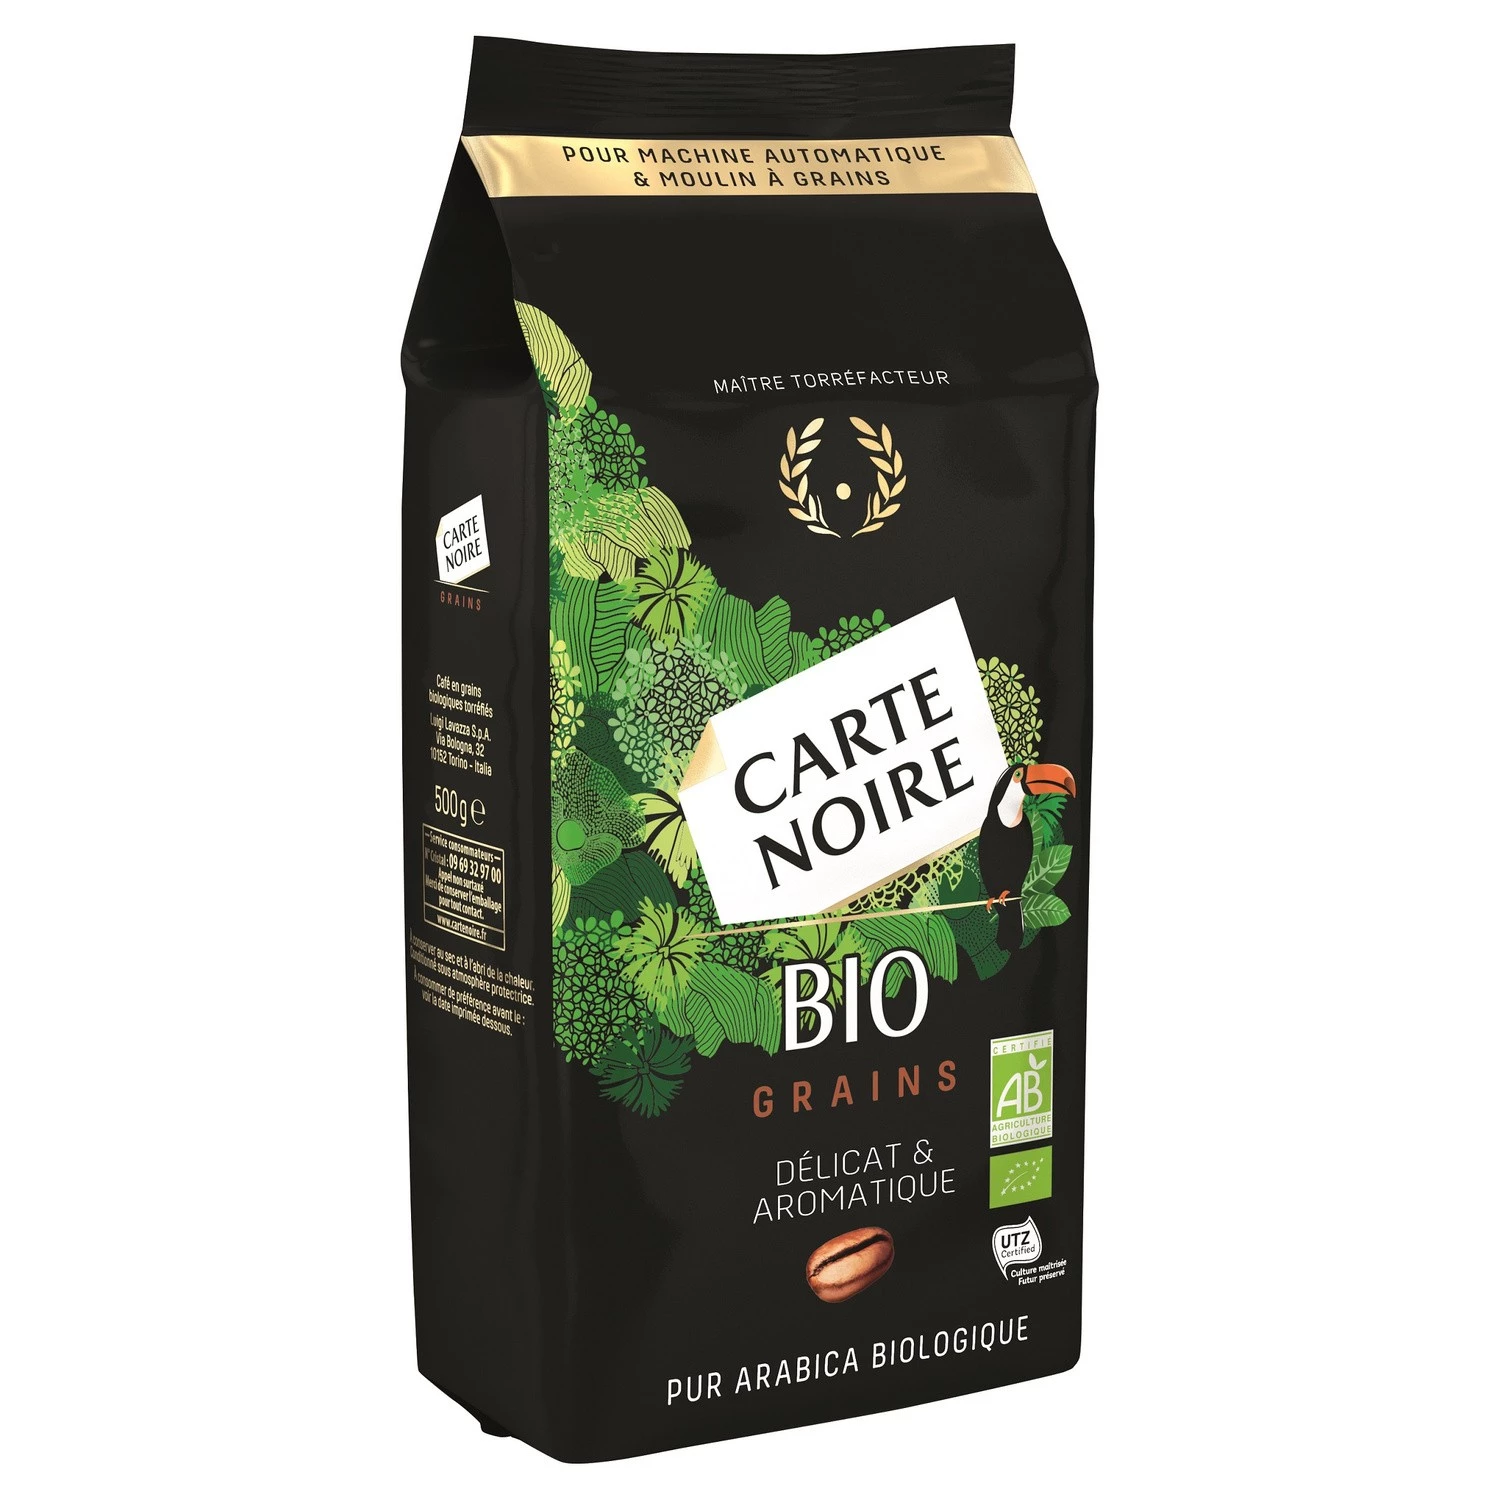 Café en grains délicat & aromatique Bio 500g - CARTE NOIRE